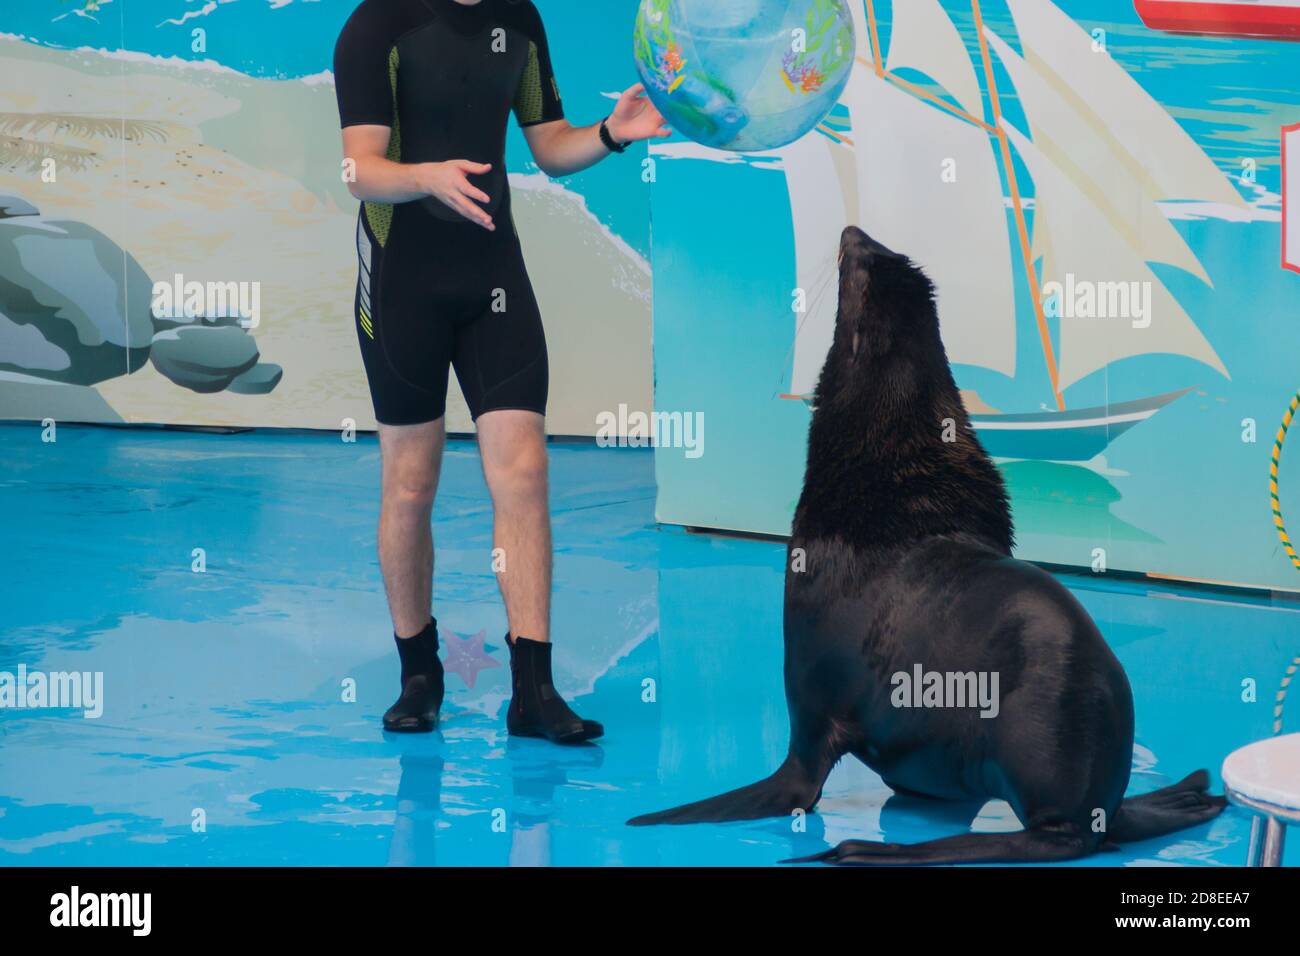 Nette flauschige, pinniped Robbe führt bei einer Show in einem Delfinarium, einem Aquarium. Trainierte Pelzrobbe spielt mit einem Ball, eine Robbe zeigt Tricks auf einer Show von Meerestieren Stockfoto